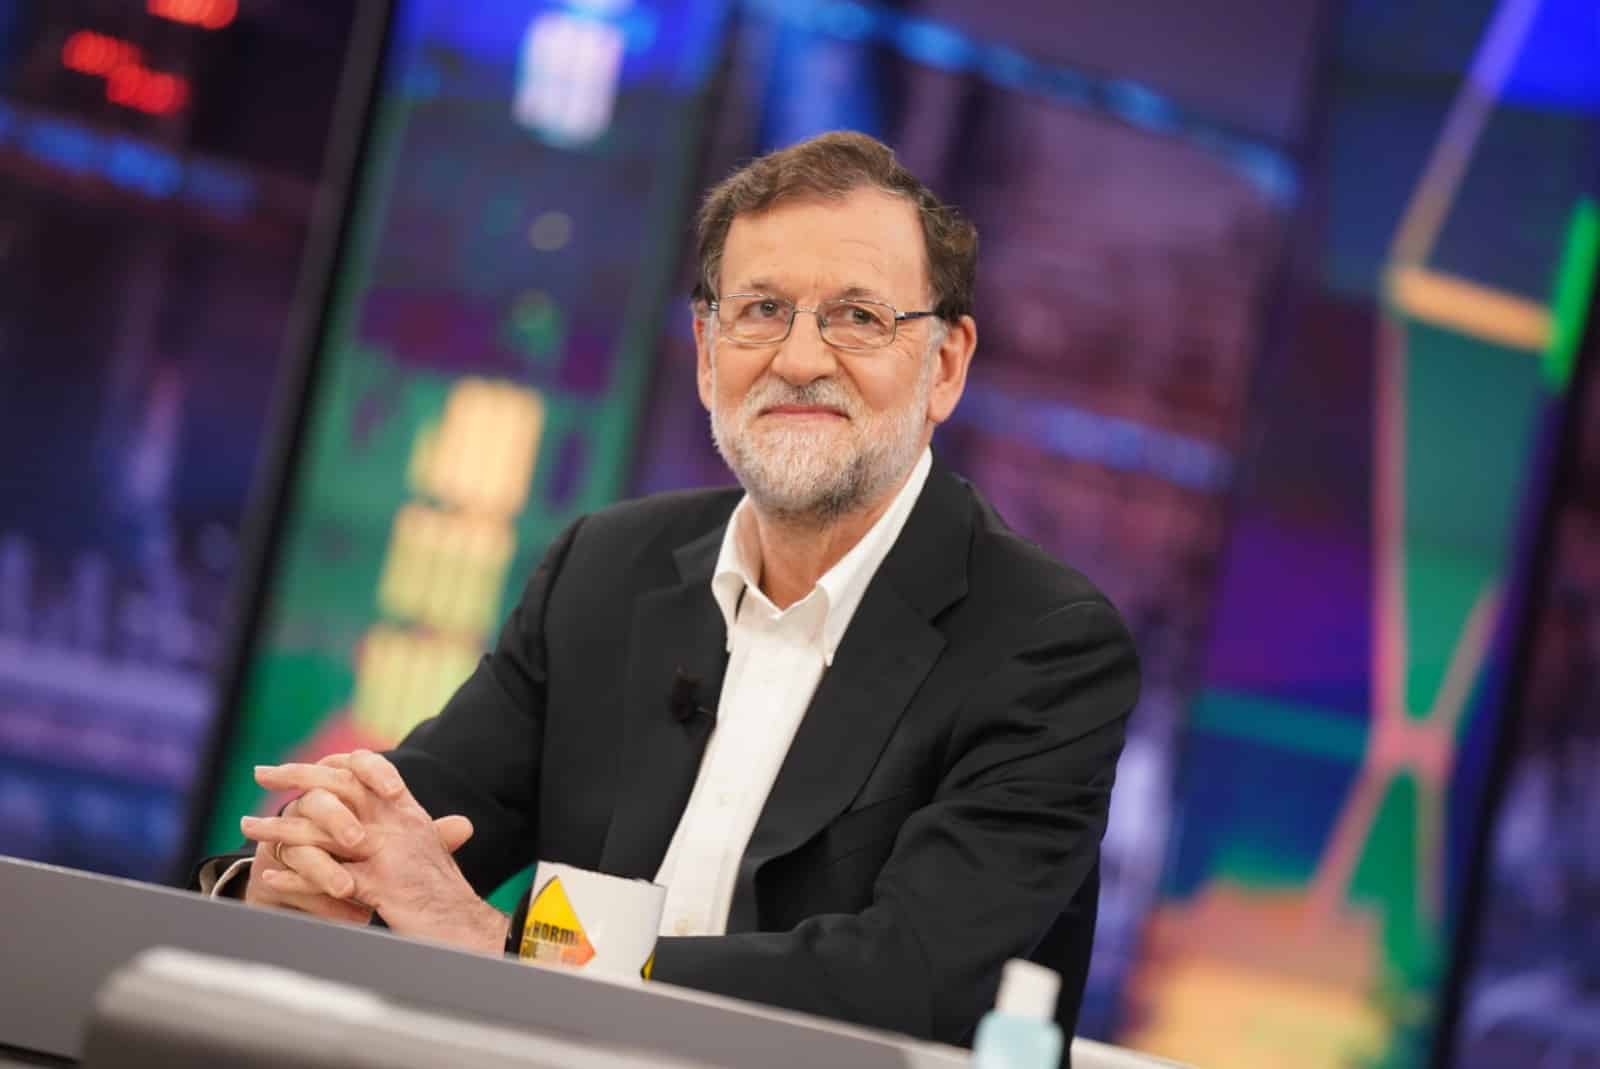 Rajoy sobre el pulso entre Ayuso y Casado: "Esto se va a resolver muy pronto"